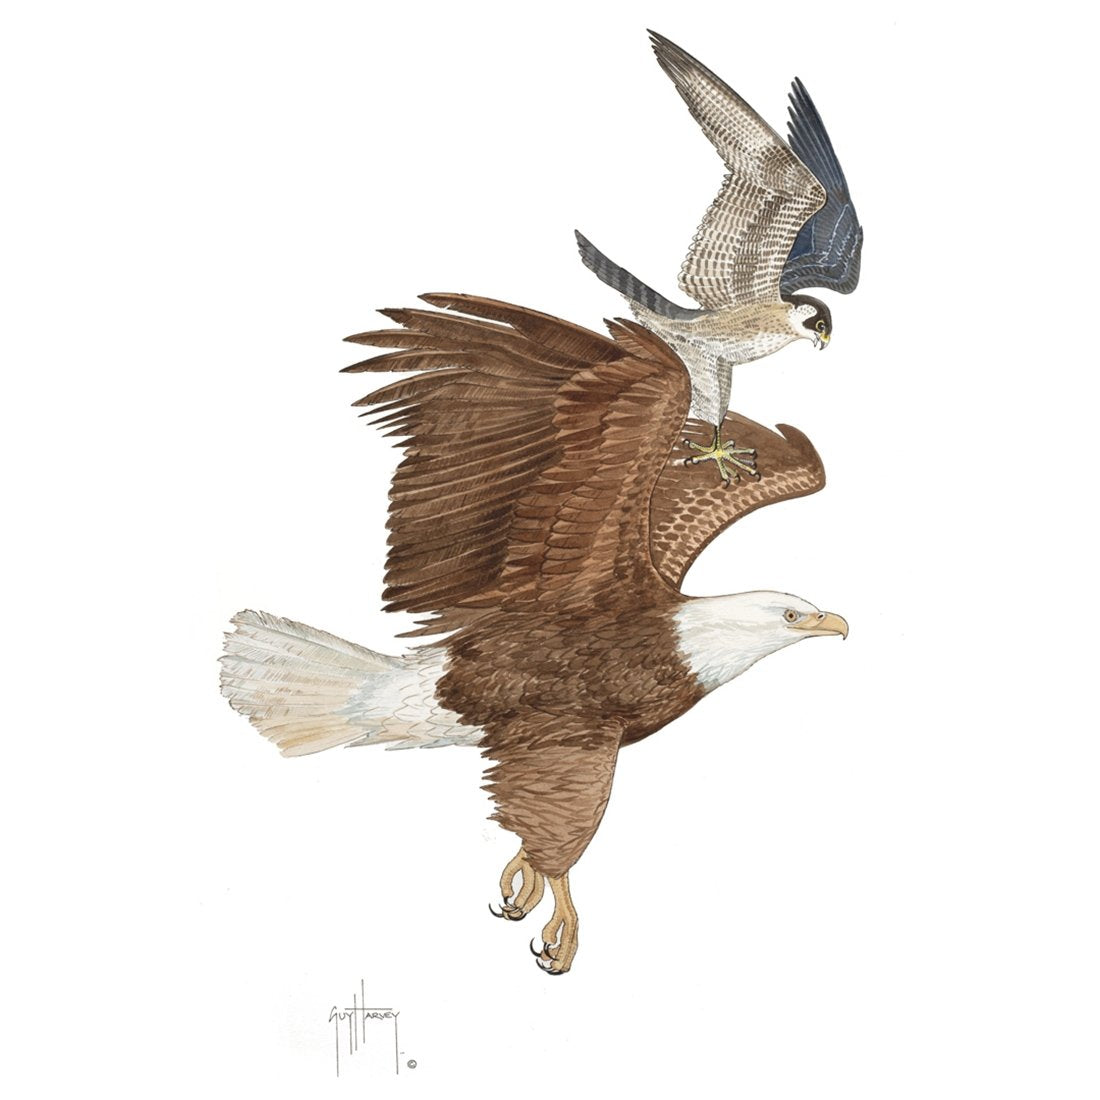 Bald Eagle and Peregrine Falcon